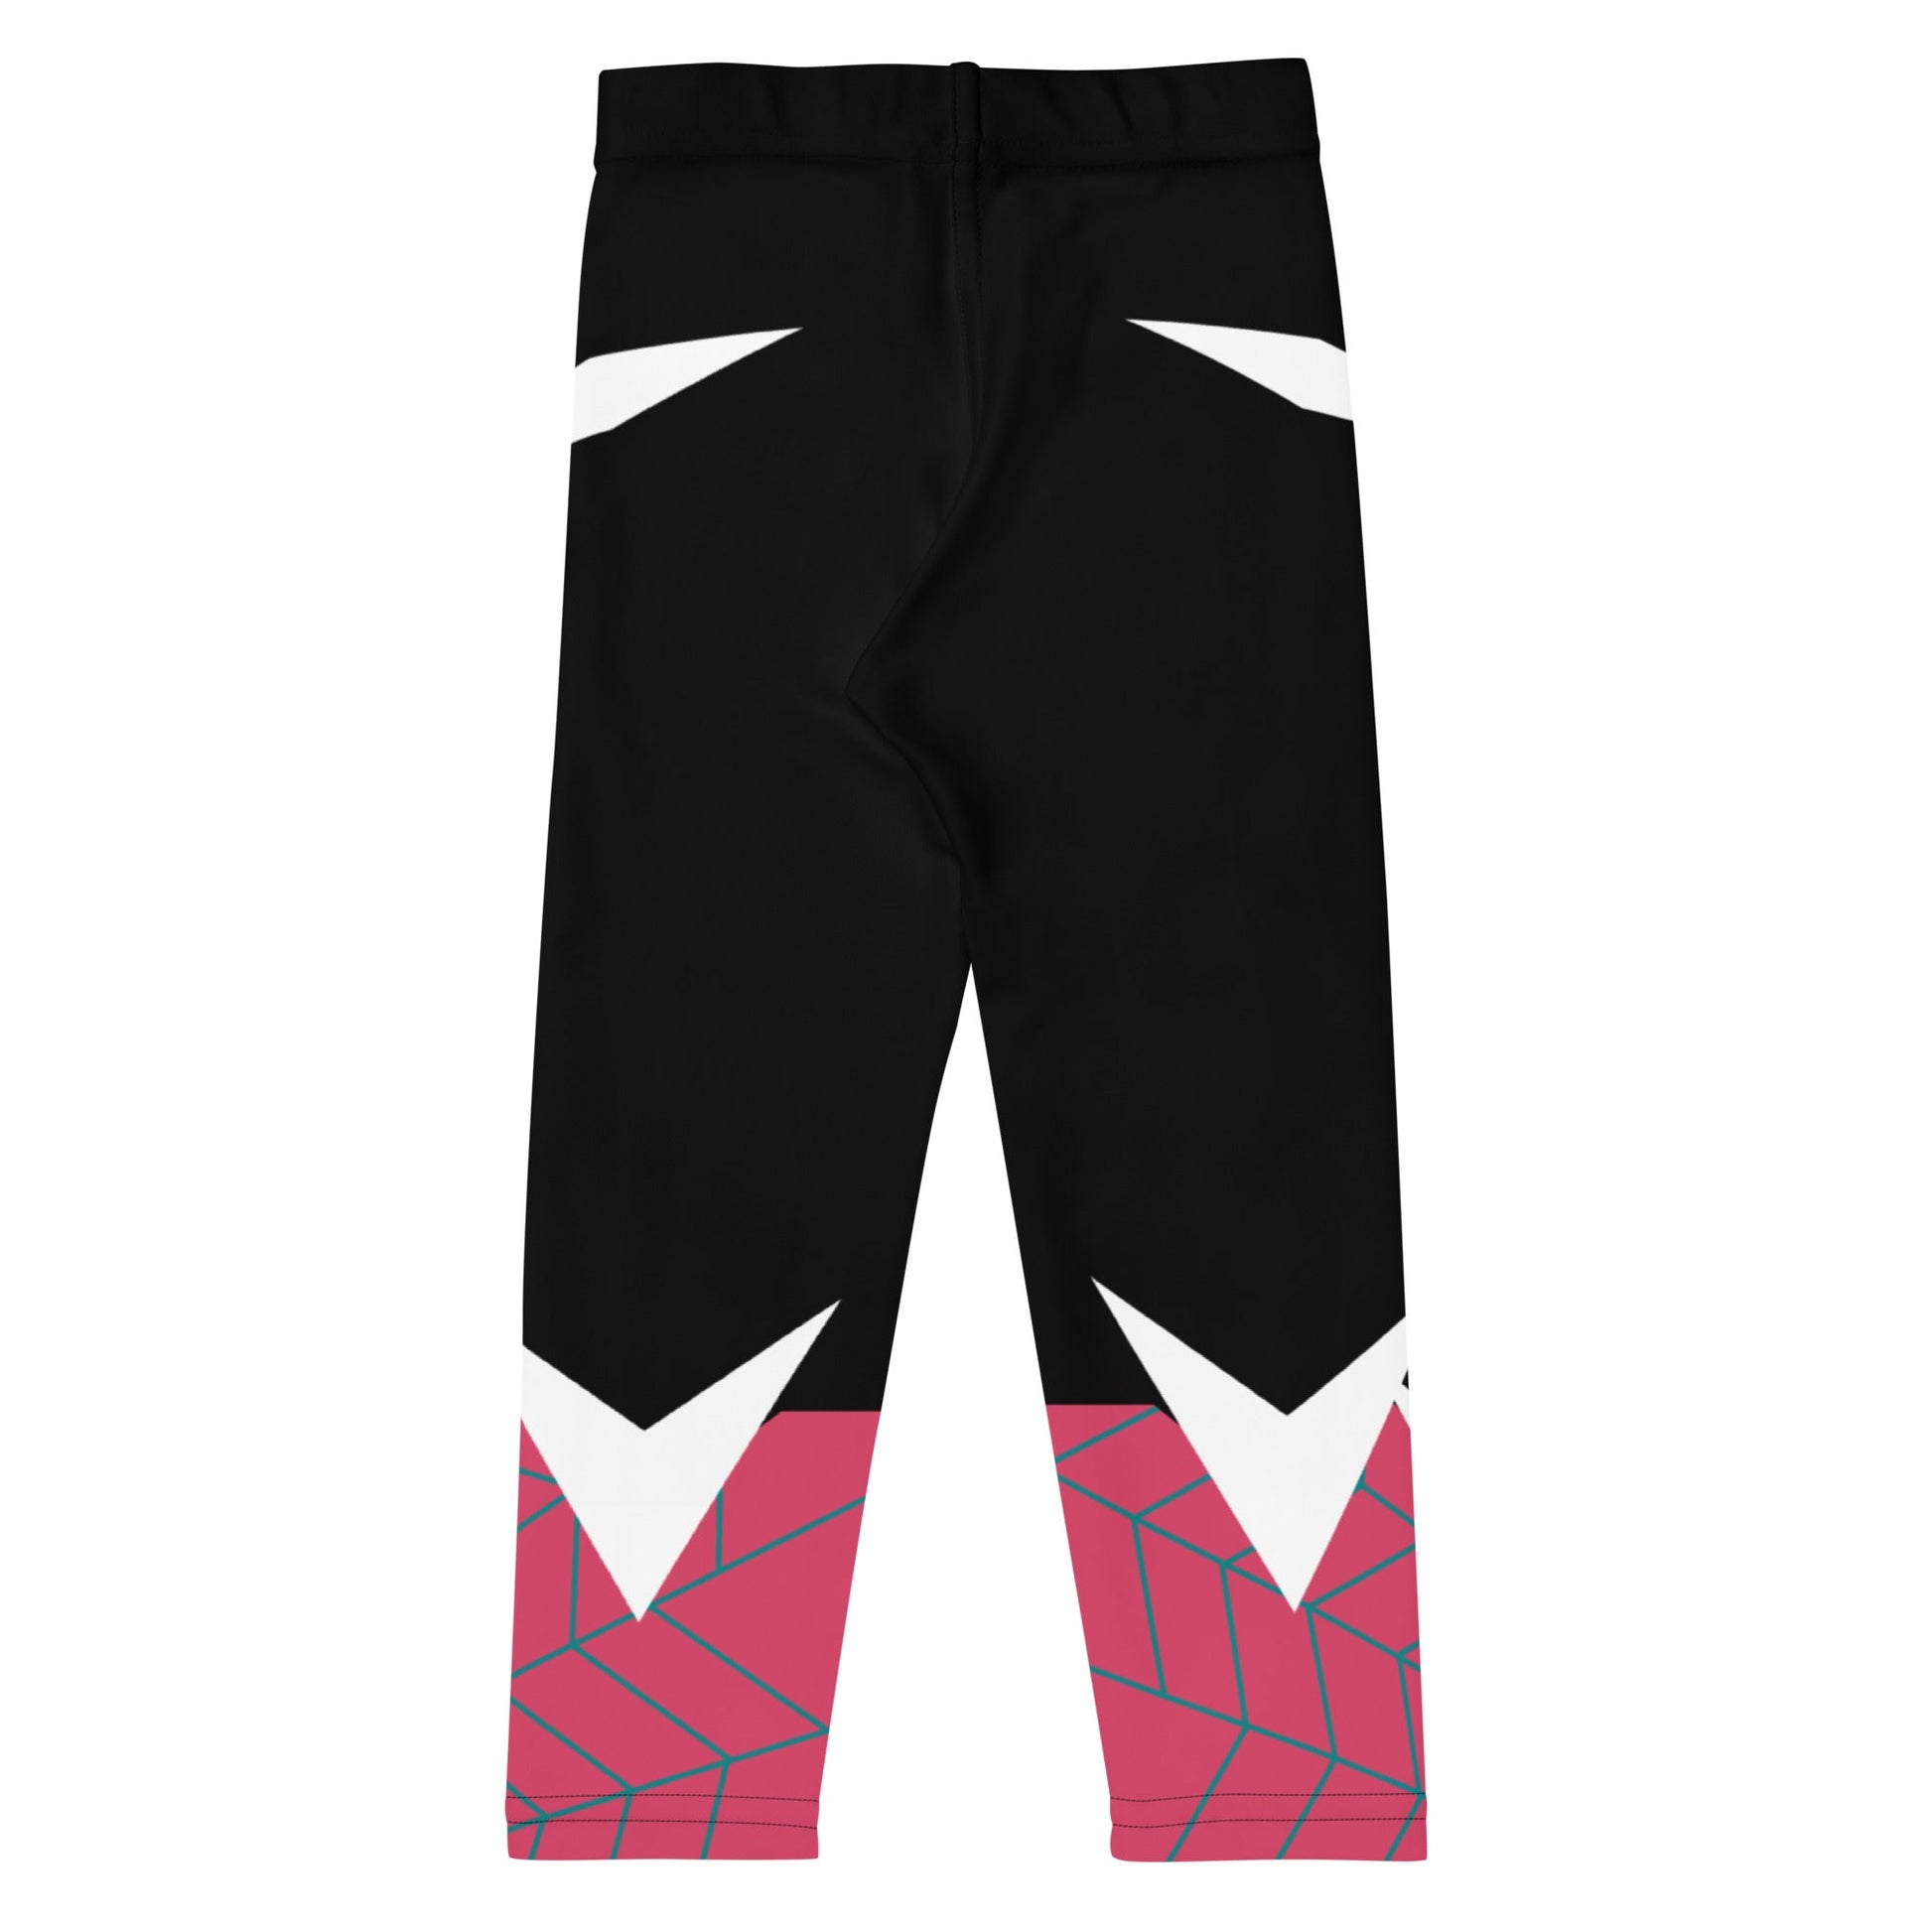 Spider Ghost Friend Kid's Leggings disney cosplaydisney costumeKids leggingsWrong Lever Clothing